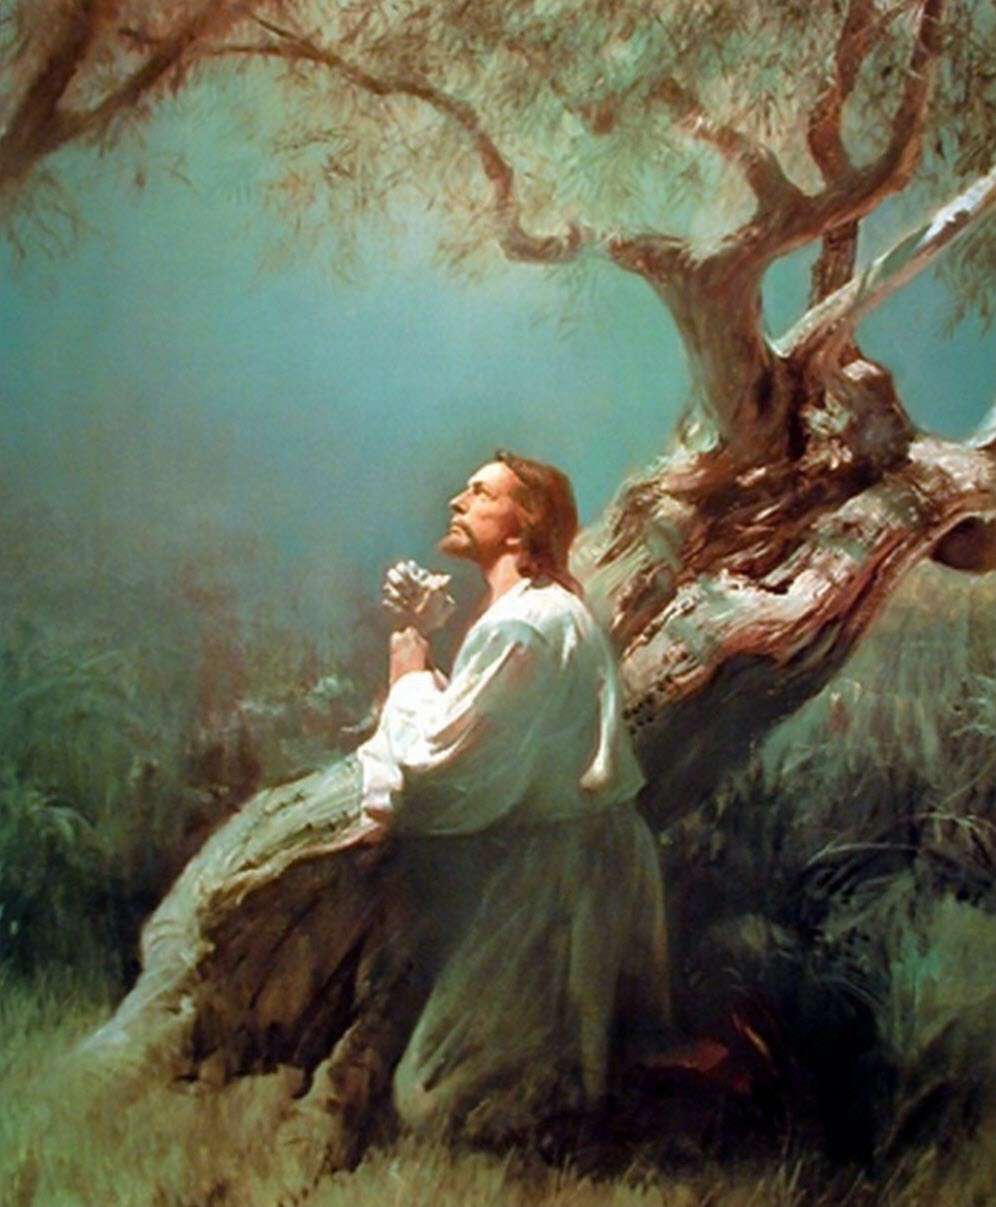 Ảnh chúa Giêsu cầu nguyện dưới gốc cây